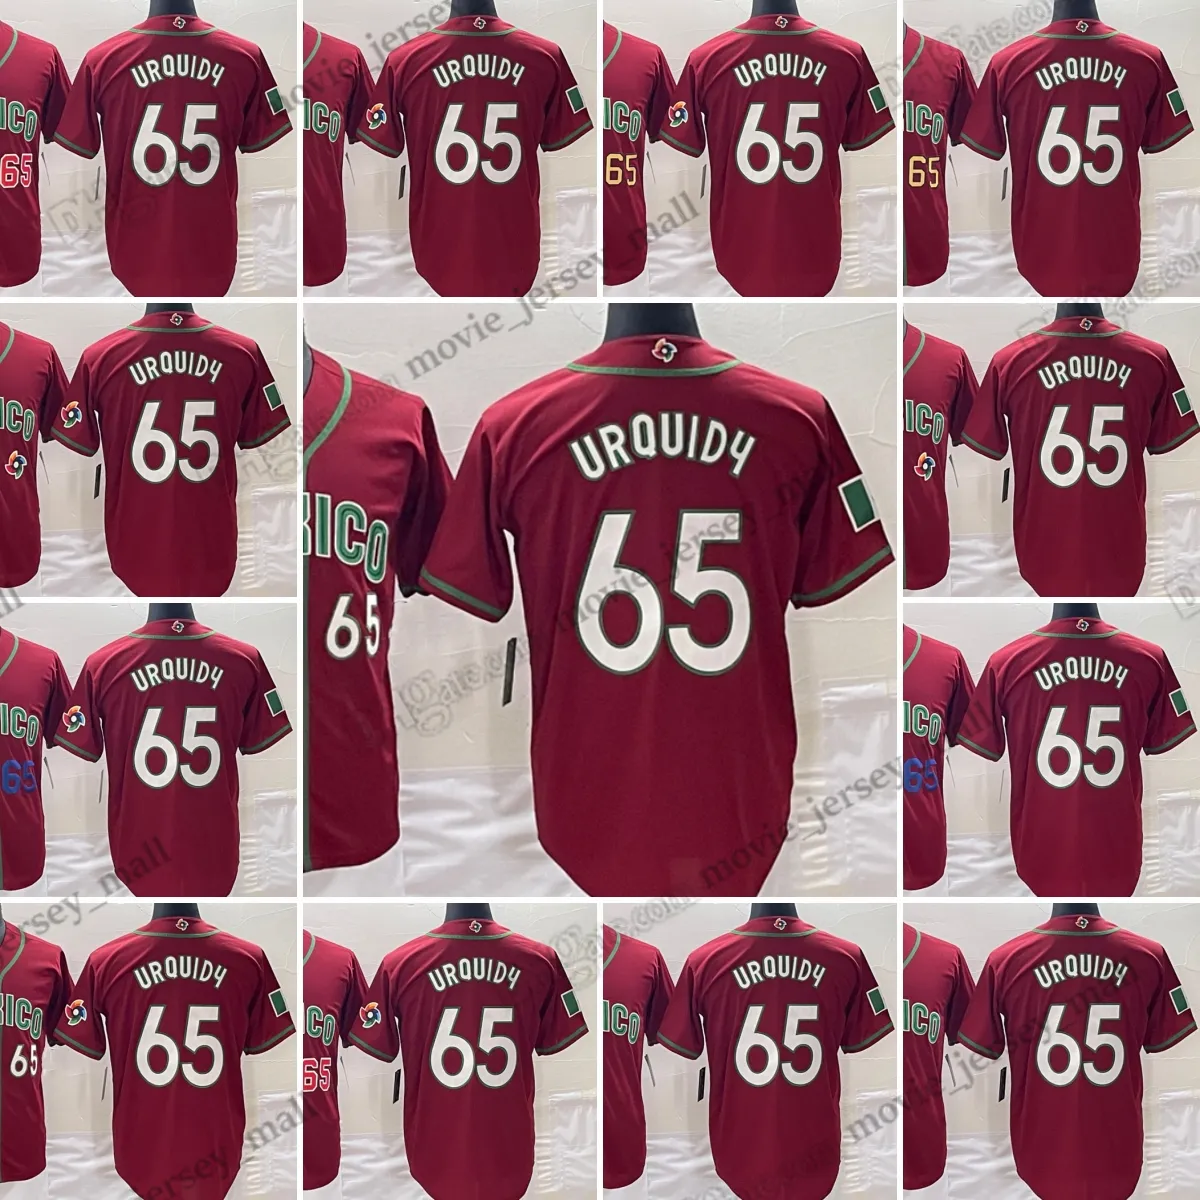 Jose Urquidy 2023 Koszulki baseballowe Pucharu Świata Wszystkie różne style czerwone zszyte koszulki rozmiar S-xxxl